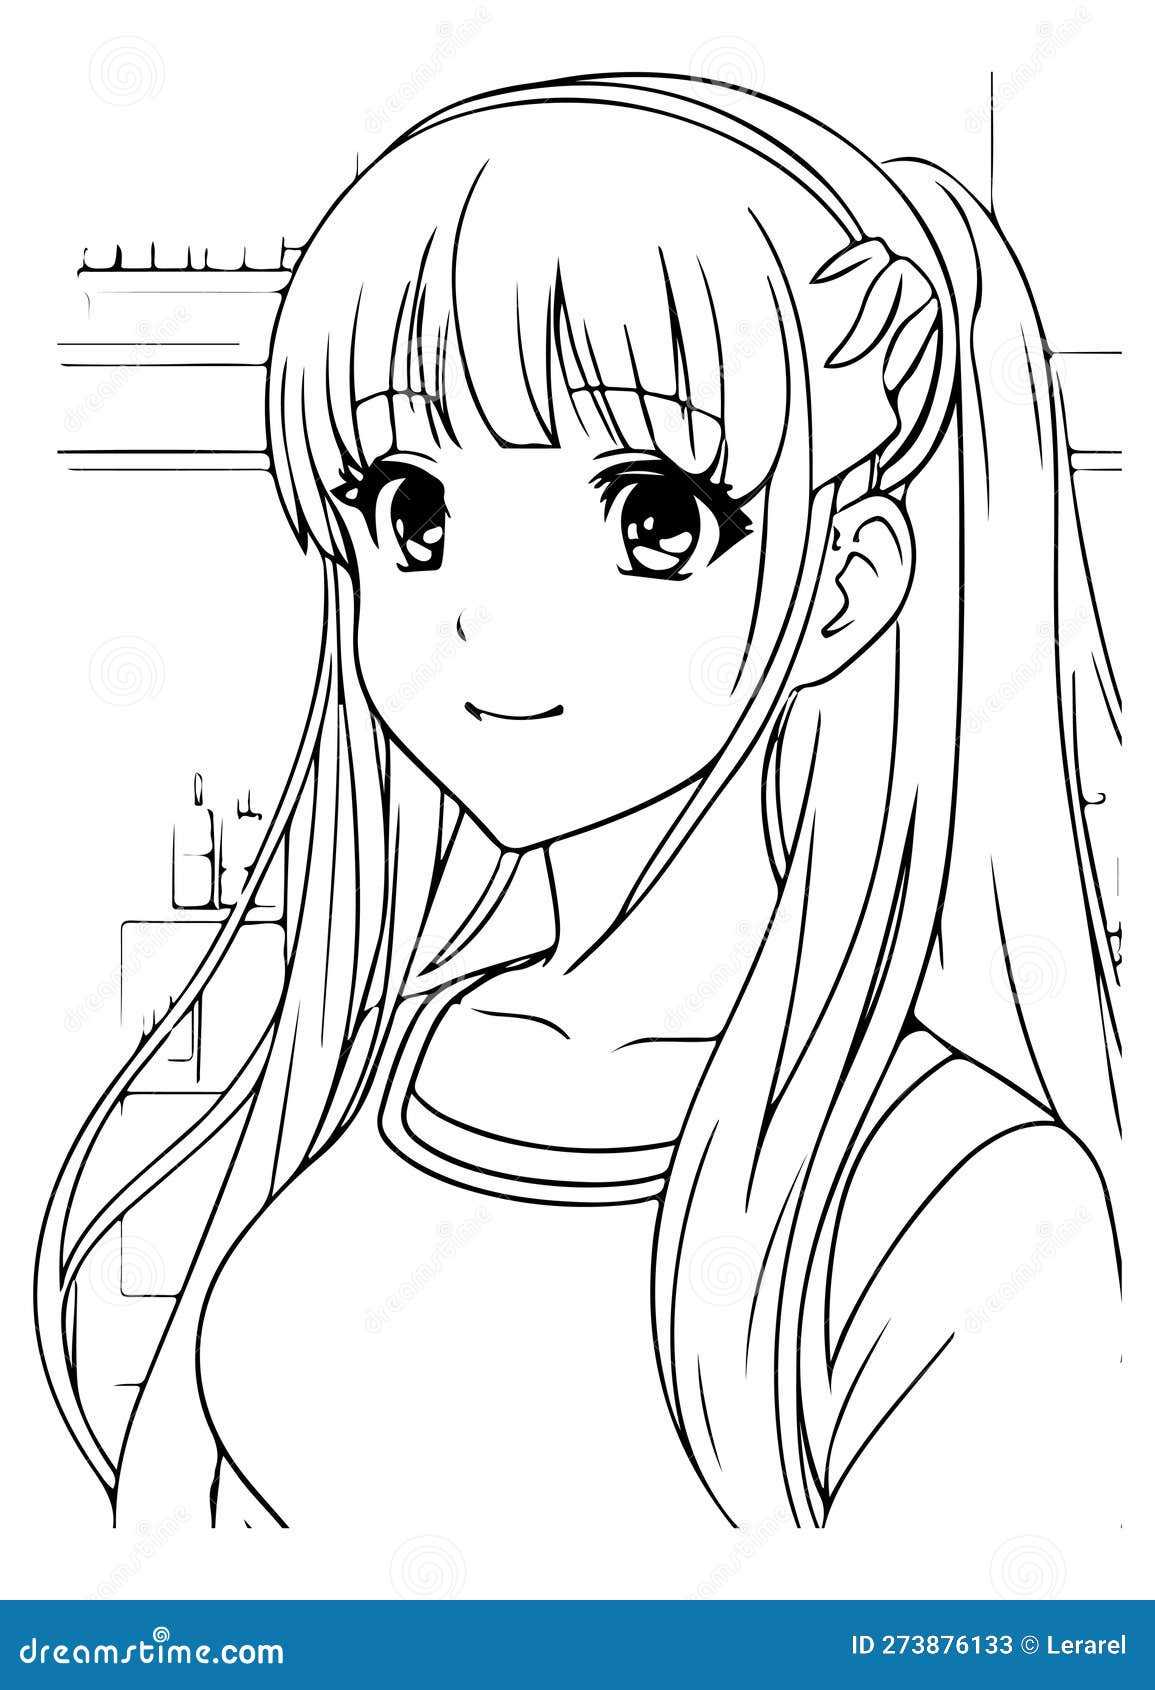 Anime girl smiling vector coloring for children stock vector fotos kawaii anime